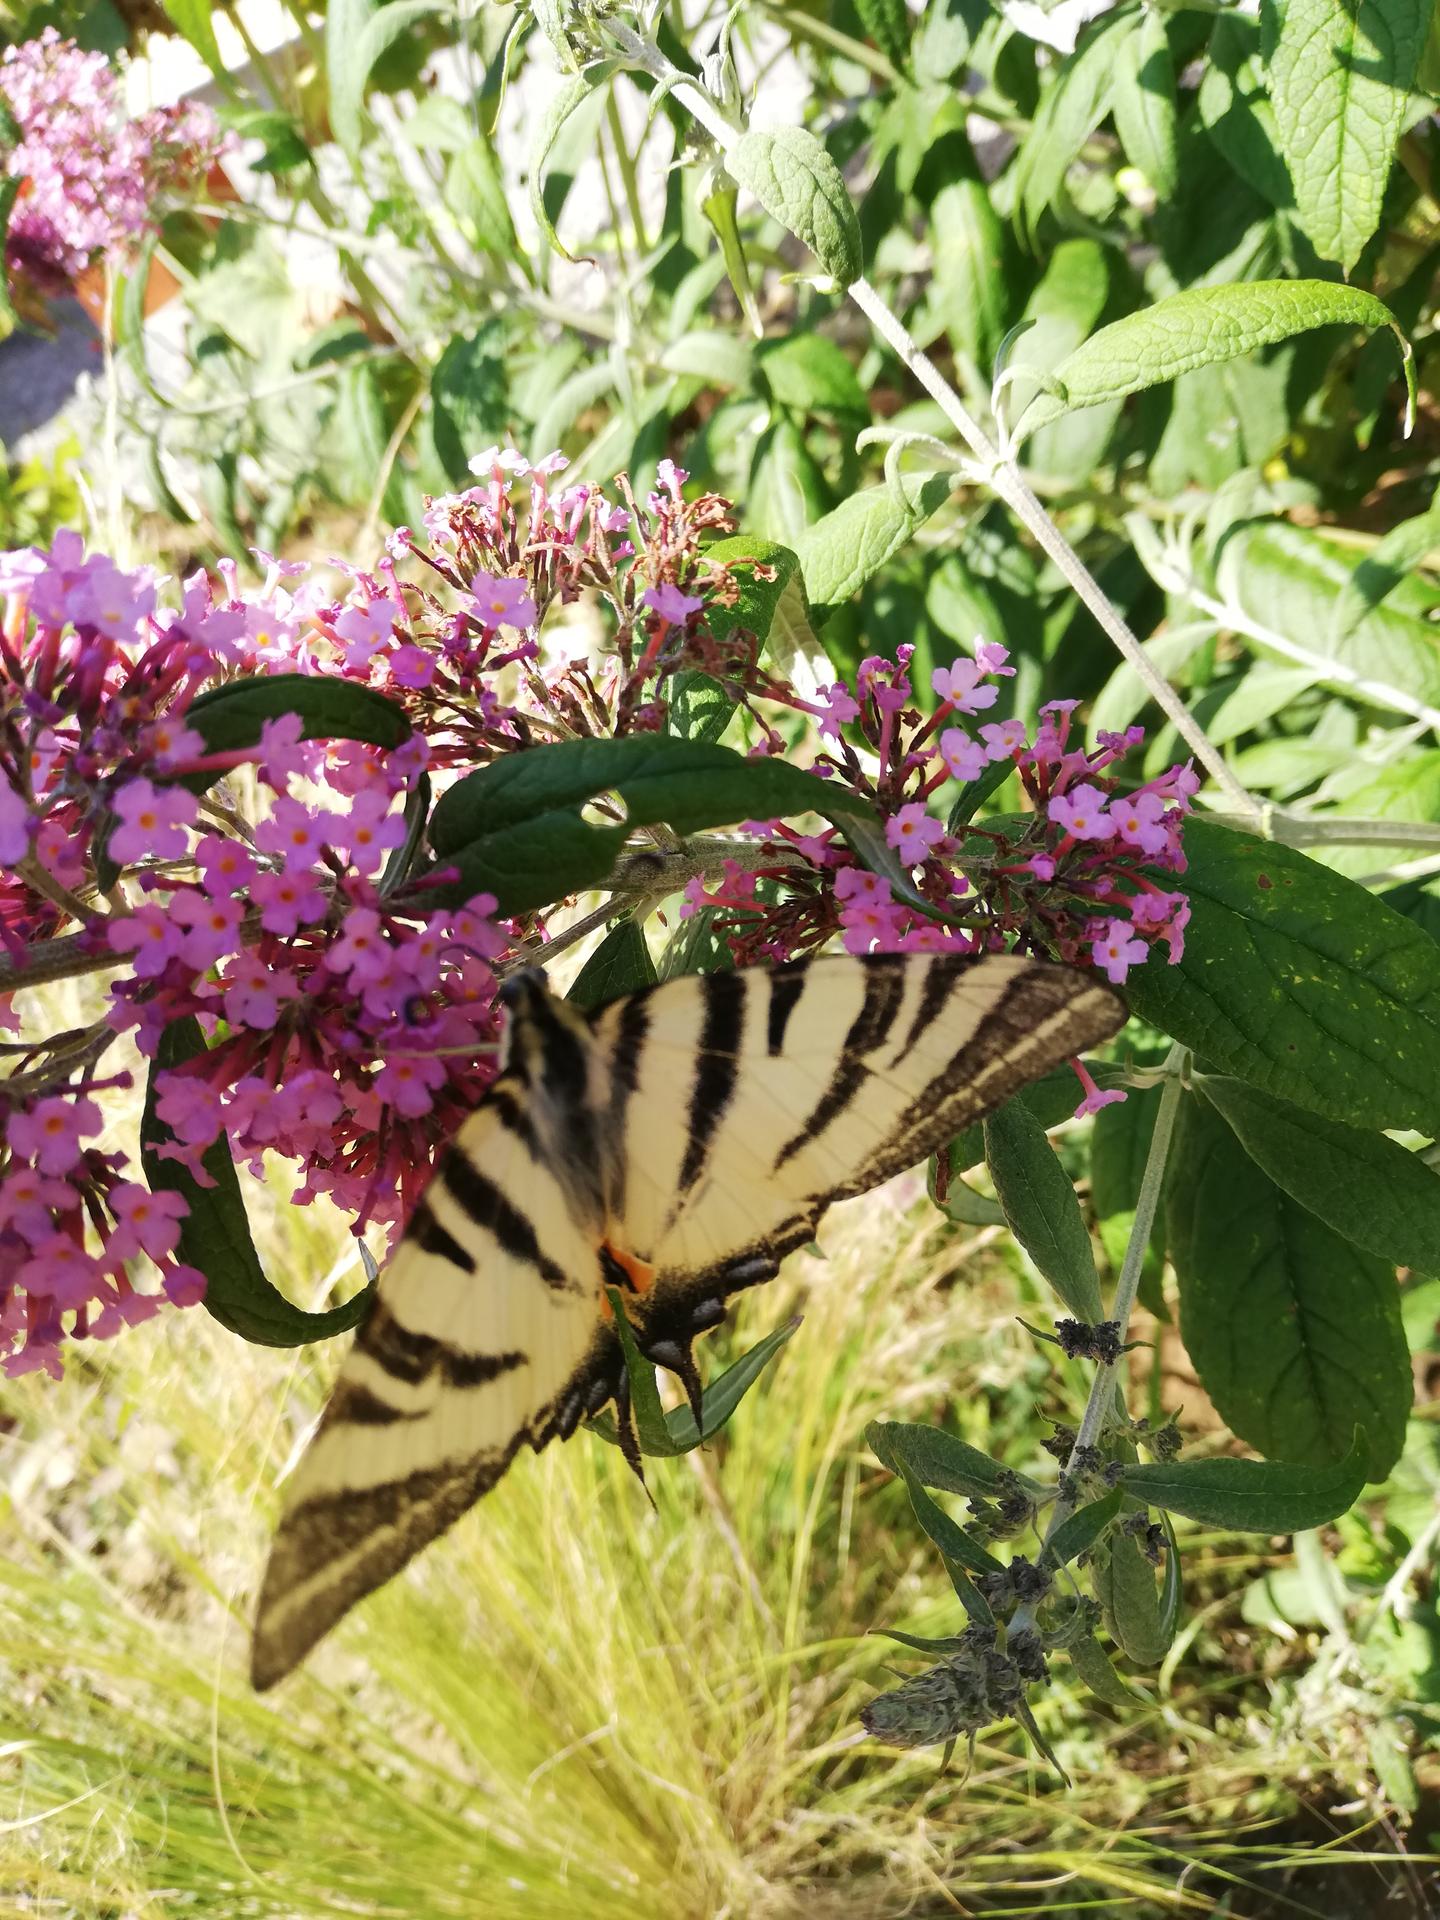 Budujeme okrasnú aj úžitkovú záhradu - 1.8.2022 Motýle sú pobláznené za budlejami. Vidlochvosty chodia každý deň aj štyri kúsky naraz.